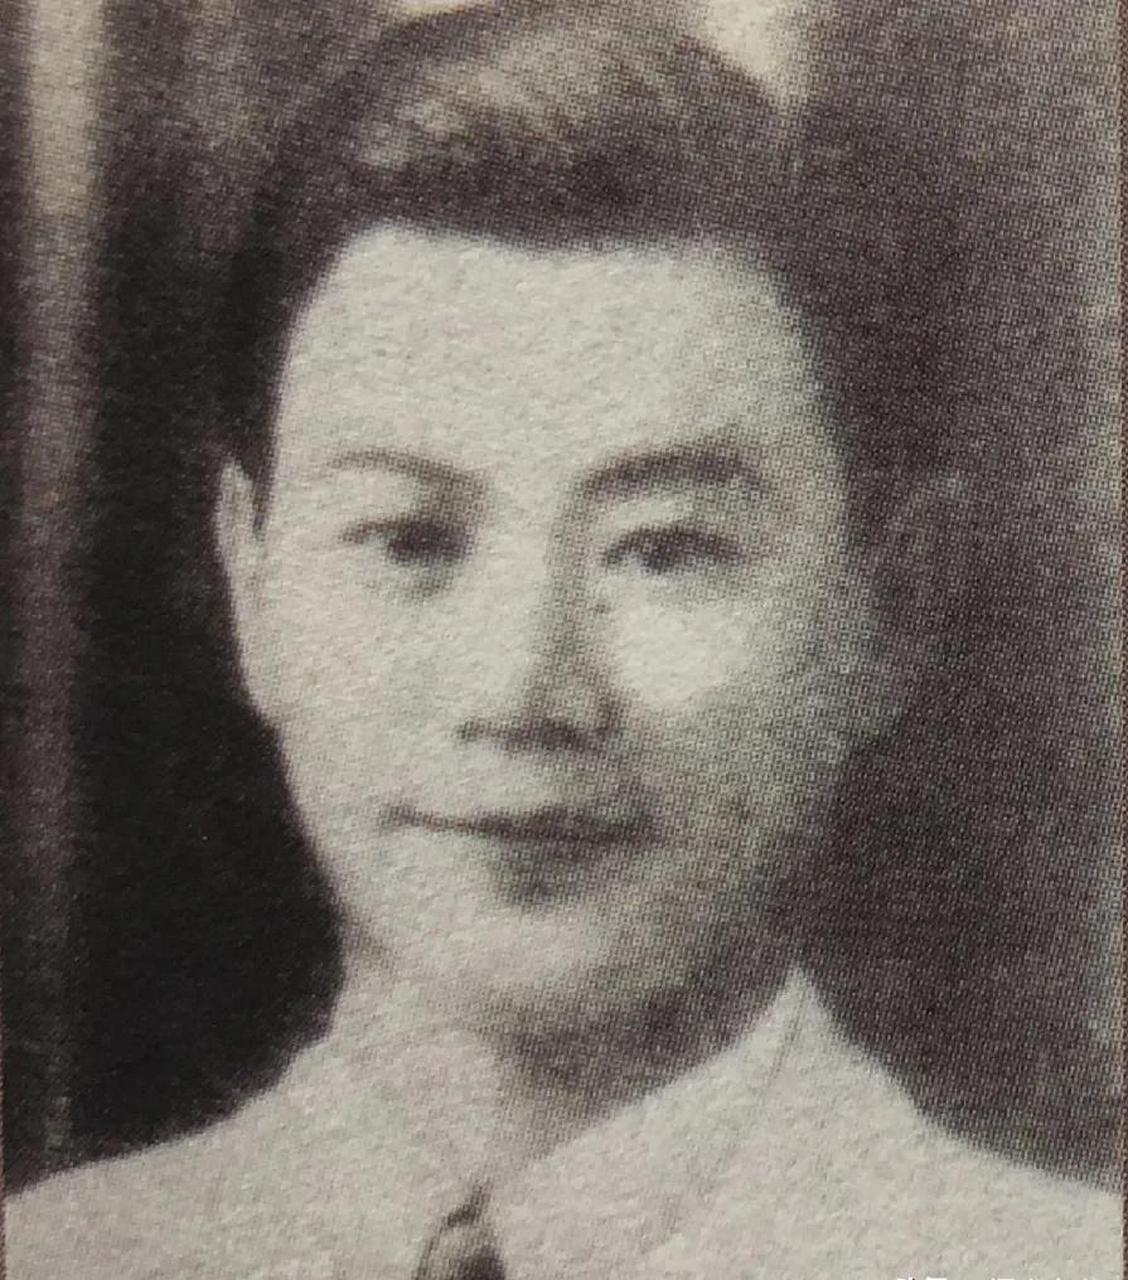 1942年,杨光泩担任中国驻菲律宾马尼拉总领事